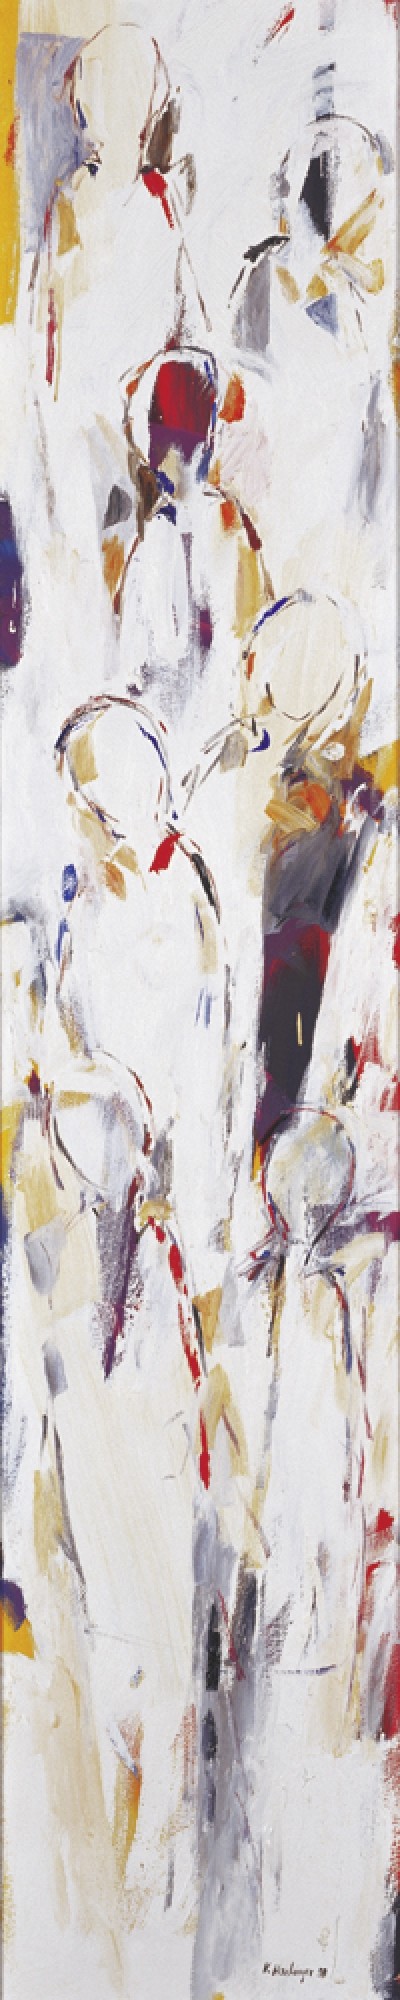 Karin R. Haslinger, Stele Weiß, 1998 (Zeitgenössisch, Modern, Abstrakt, Malerei, figurativ, Menschen, Personen, Wohnzimmer, Treppenhaus, weiß)